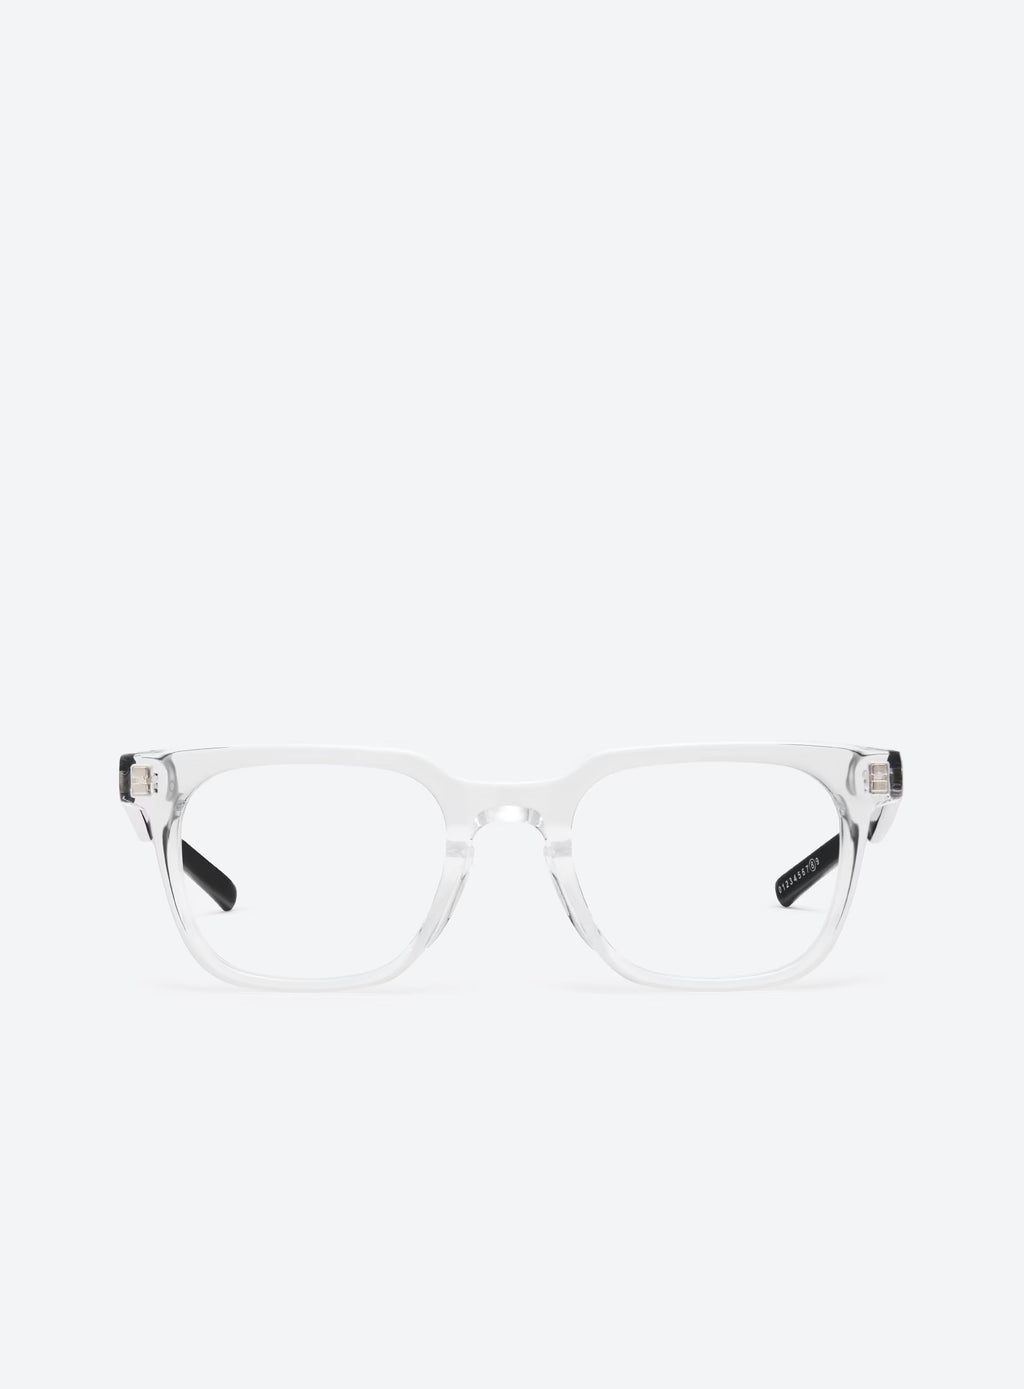 GENTLE MONSTER X MAISON MARGIELA MM117-C1 Glasses